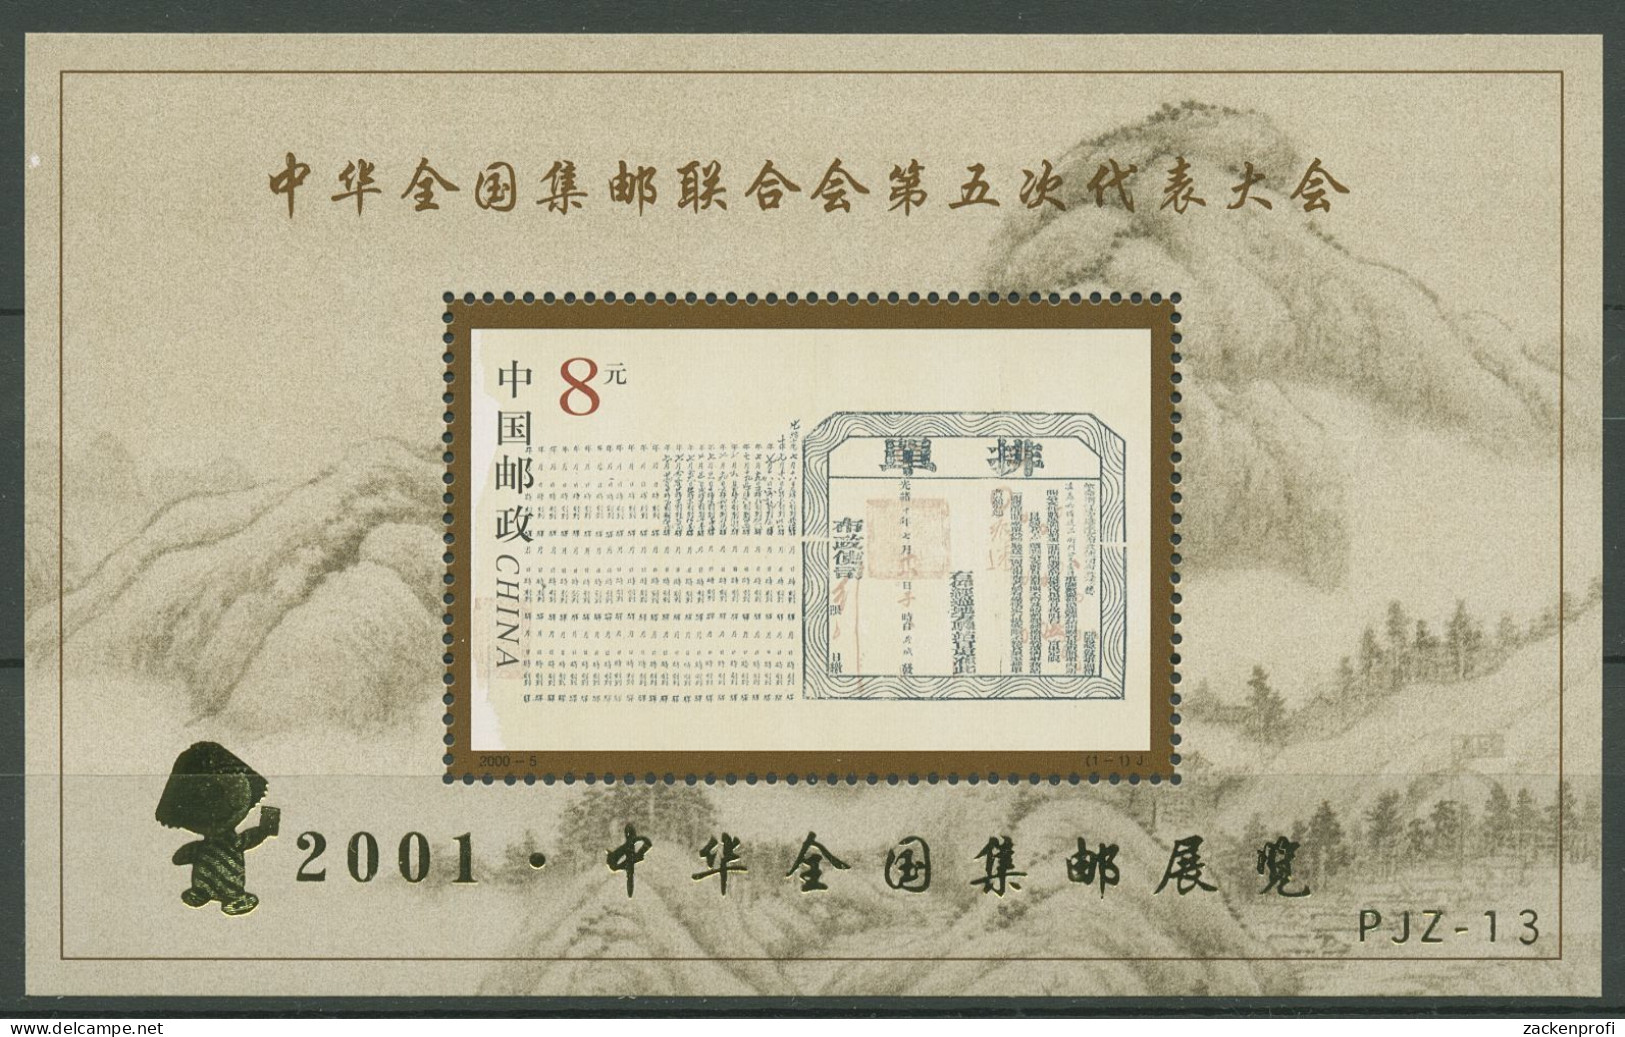 China 2000 Chinesischer Philatelistenverband Block 94 I Postfrisch (C40324) - Hojas Bloque